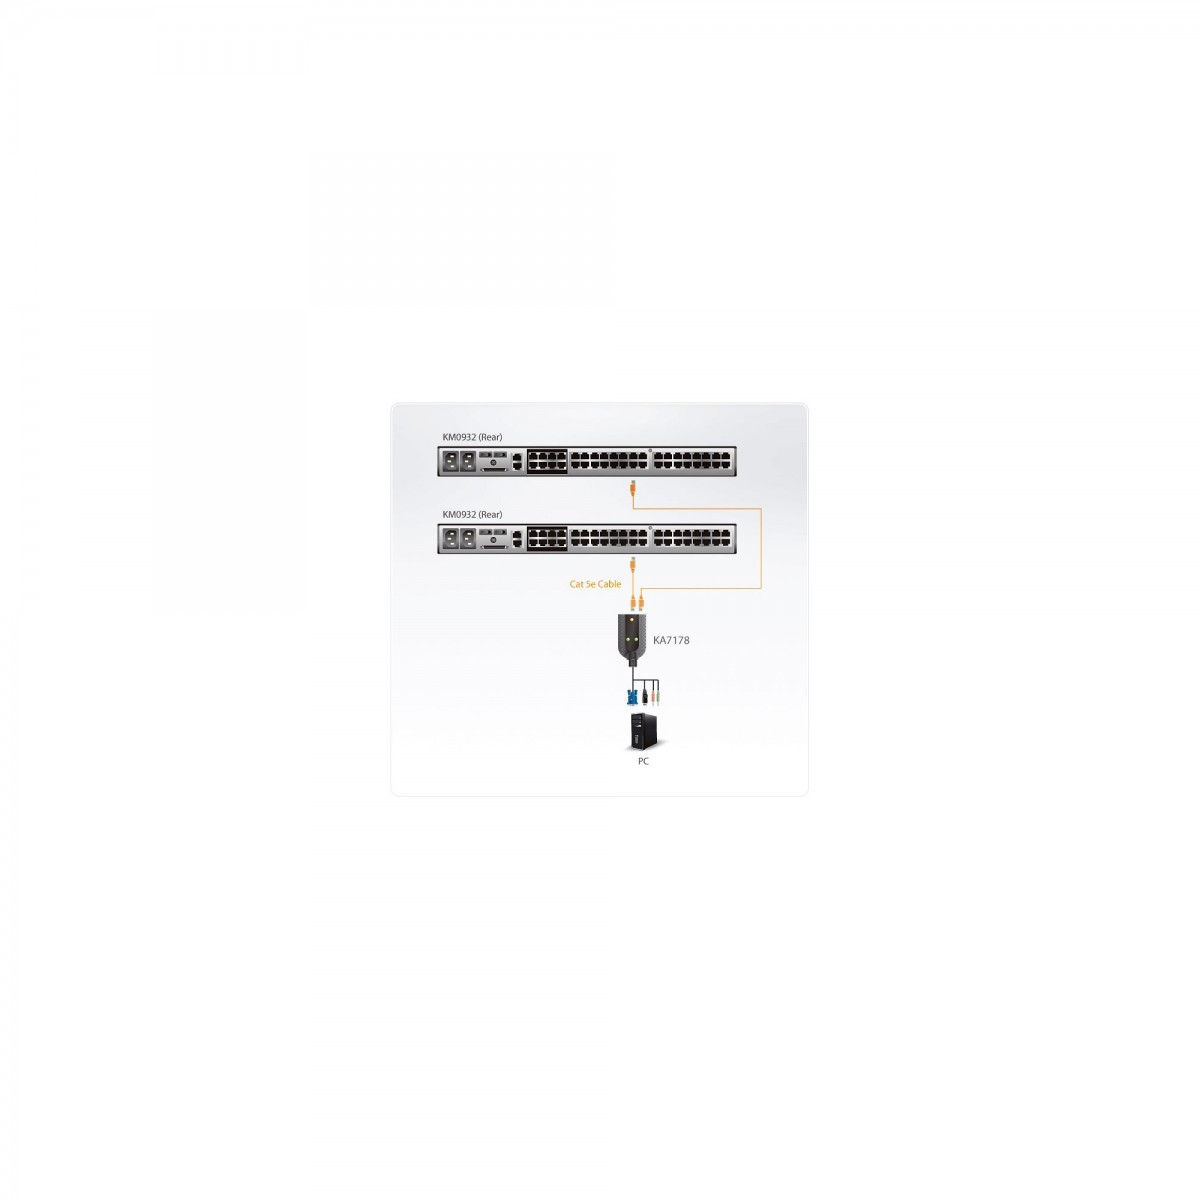 ATEN KA7178-AX - USB - VGA - Black - RJ-45 - 2 x RJ-45 Female - 1 x USB Type A Male - 1 x HDB-15 Male - 2 x Mini Stereo Plug